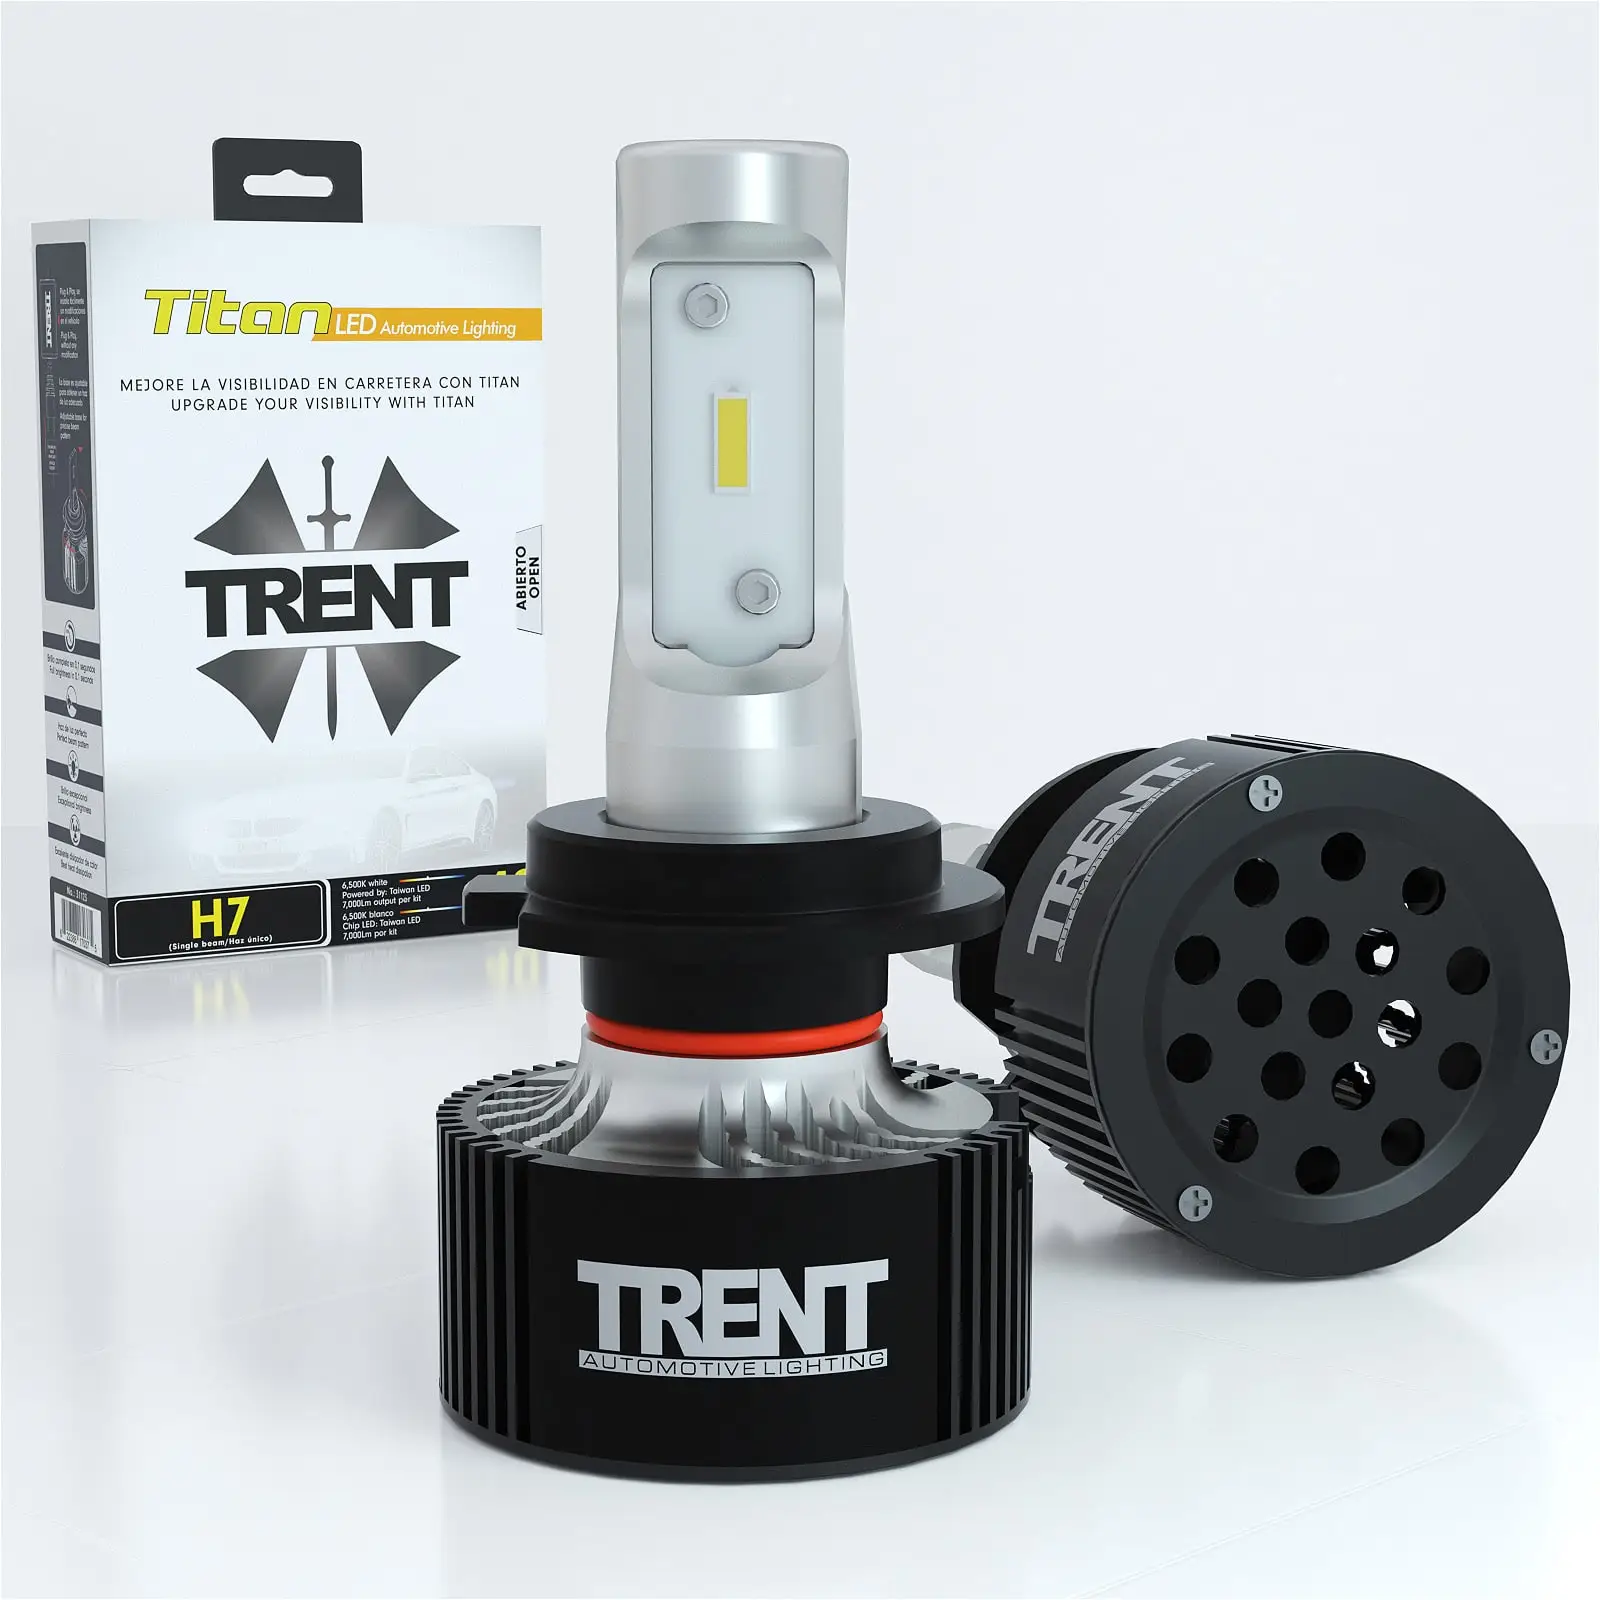 Headlight bulb, led headlight bulb, led headlight kit, led conversion kit